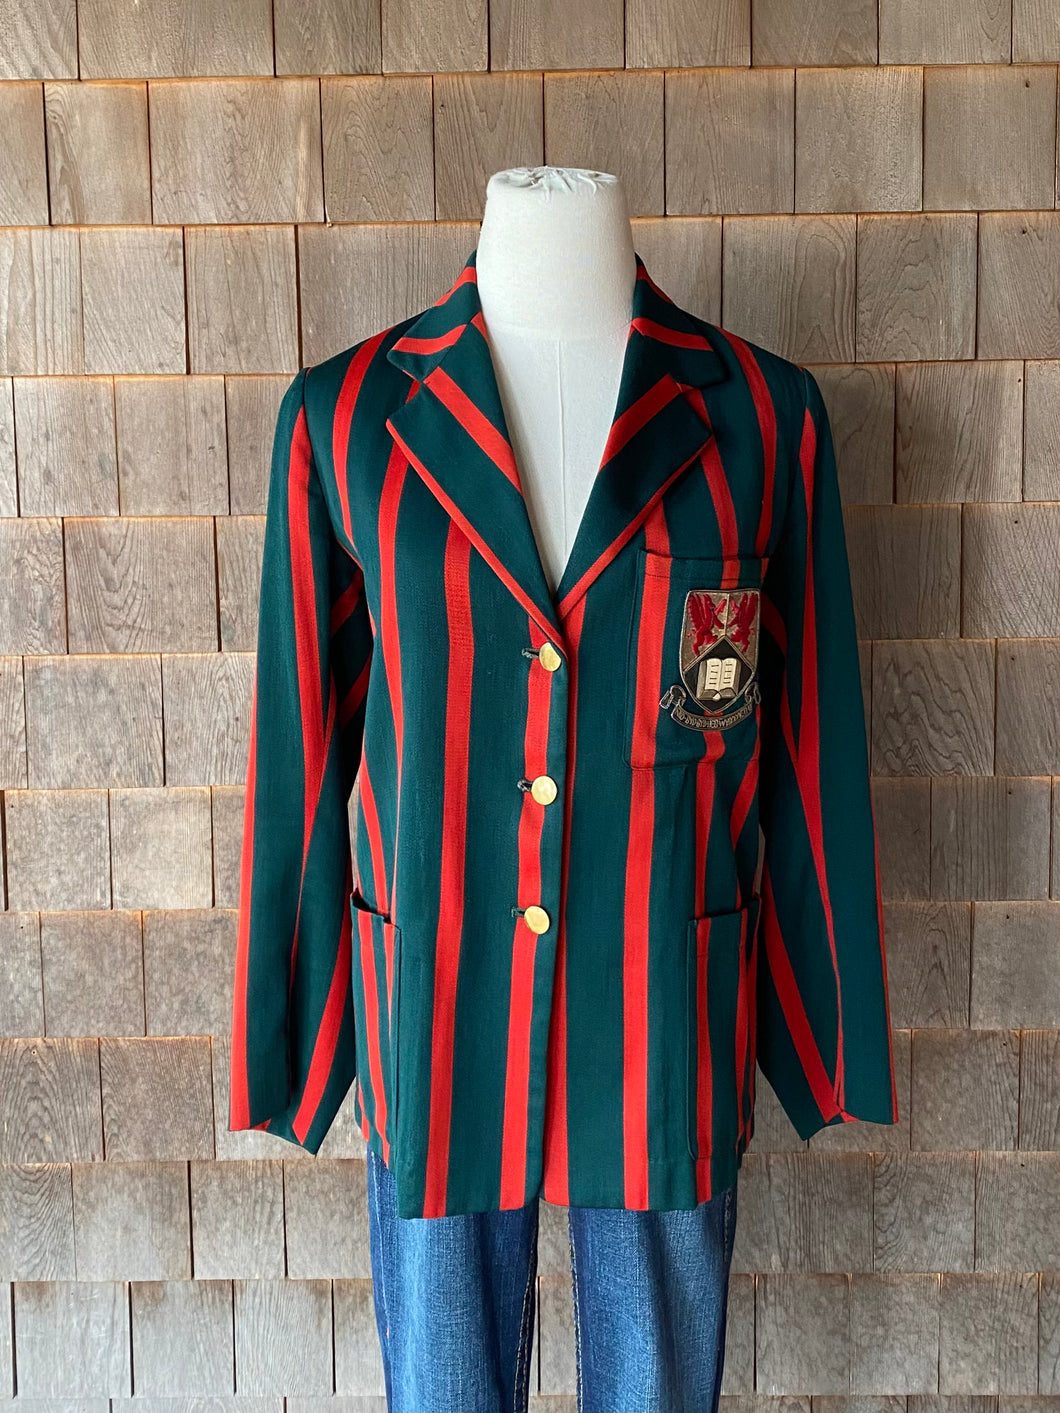 Vintage Red & Green English Crest Blazer